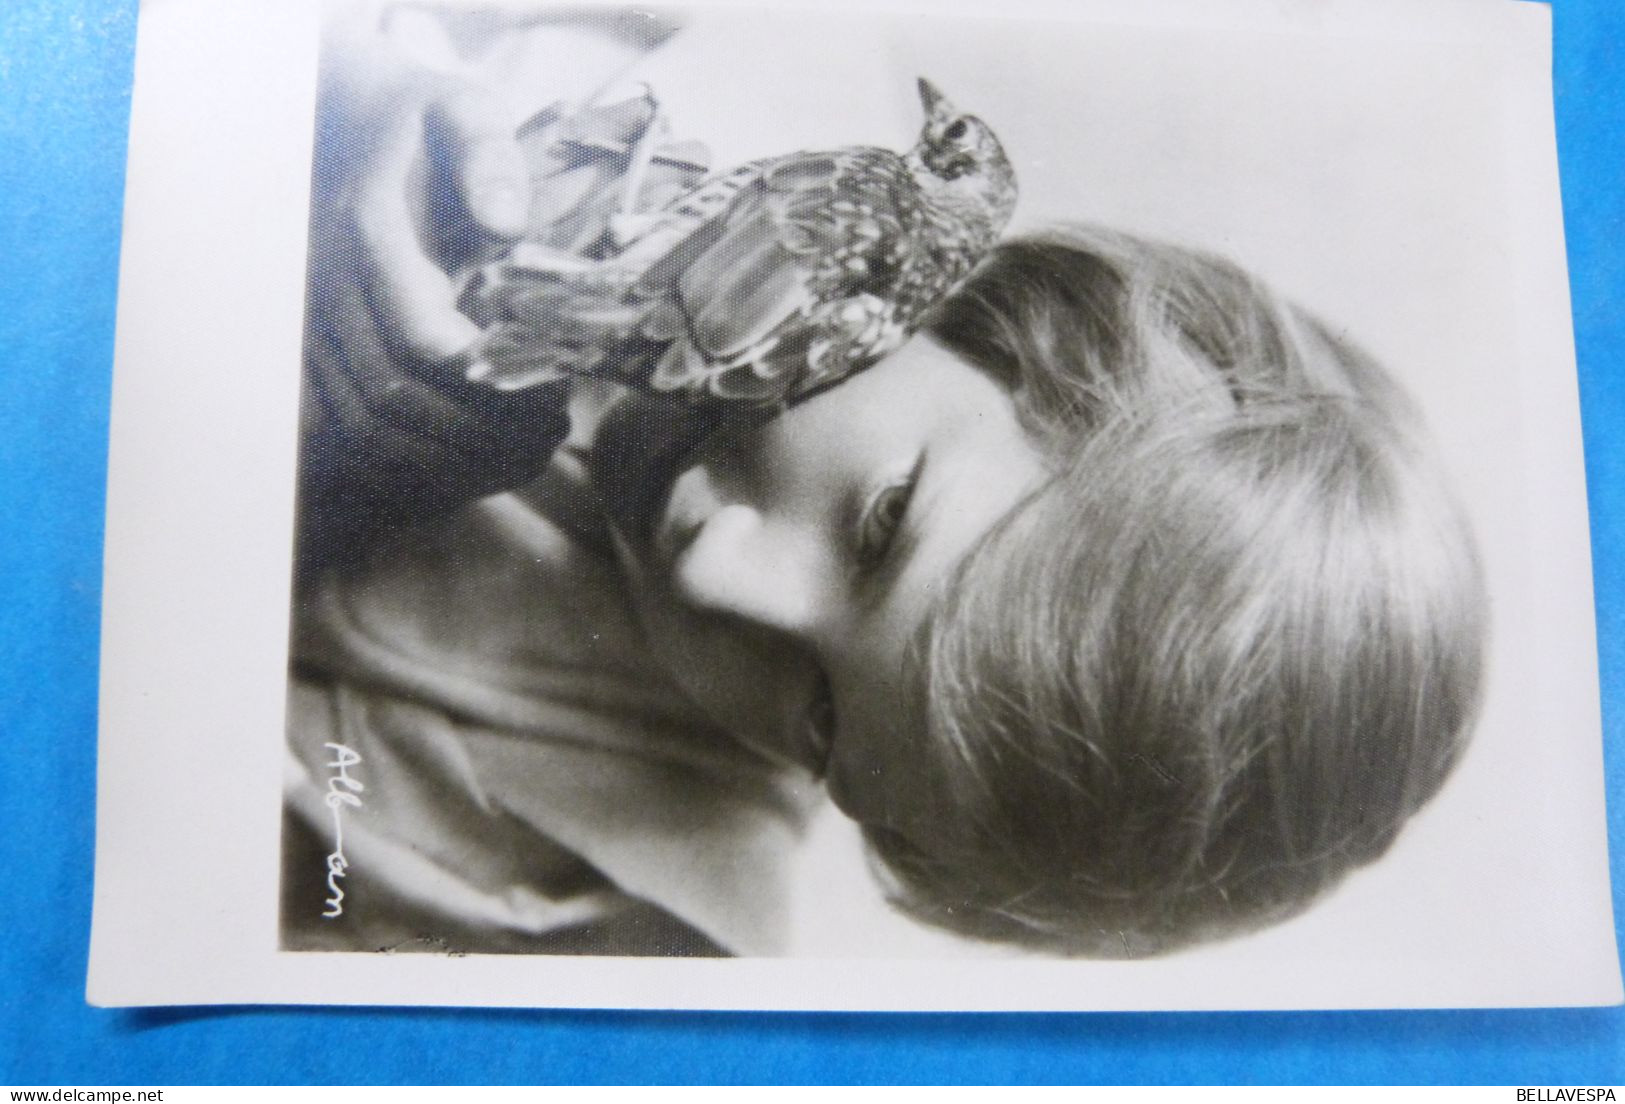 S.A.R. /H.K.H Albert-Astrid Belgique Boudewijn Josephine-Charlotte Luxembourg Lot x 45 postkaarten